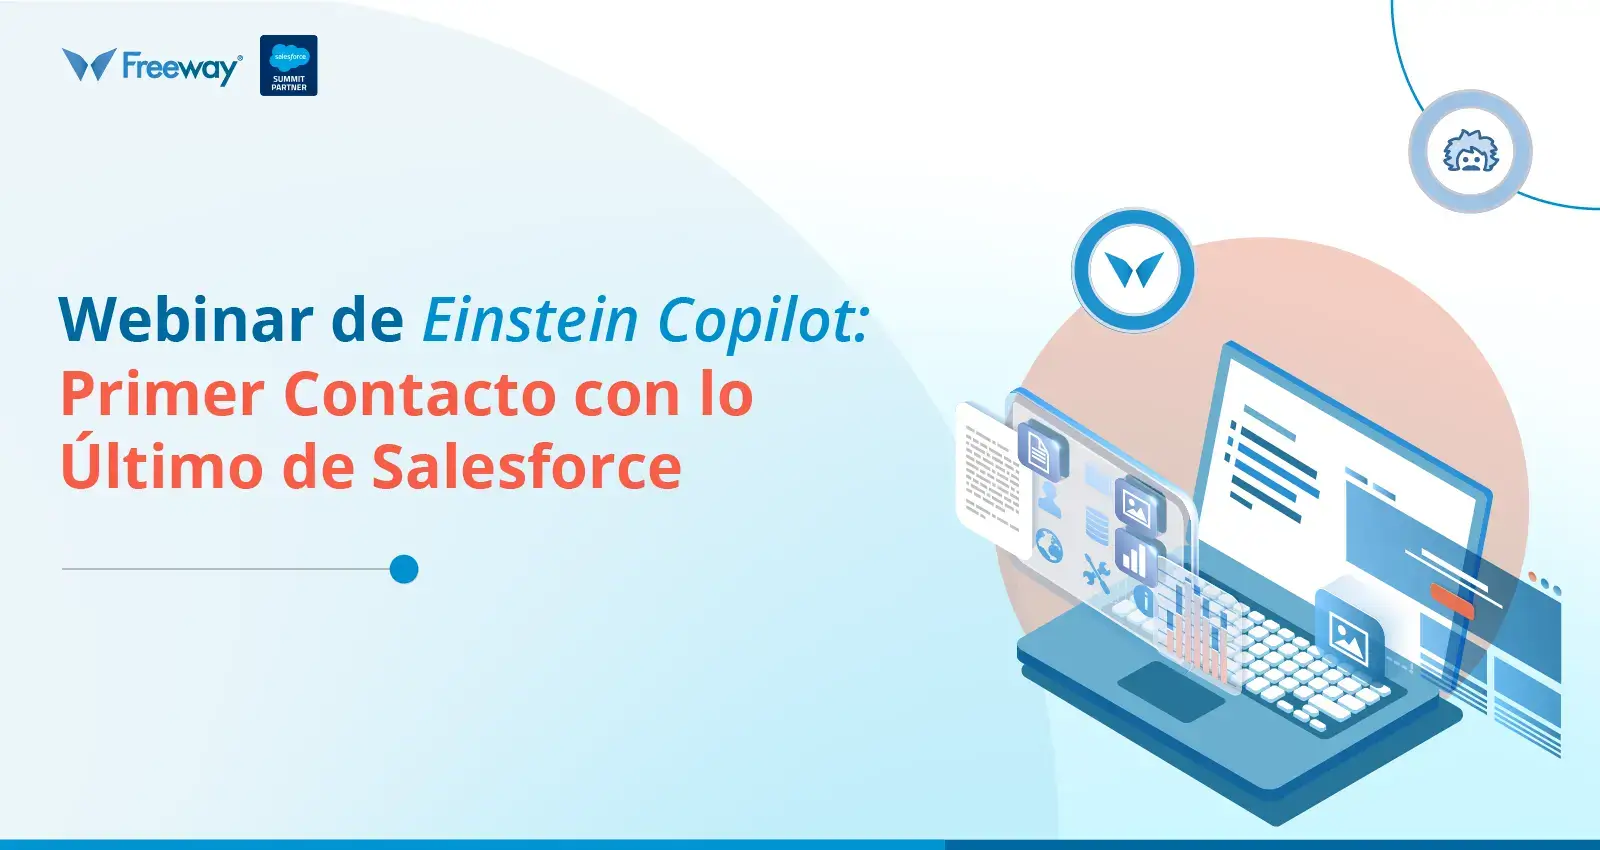 Webinar de Einstein Copilot: Primer Contacto con lo Último de Salesforce